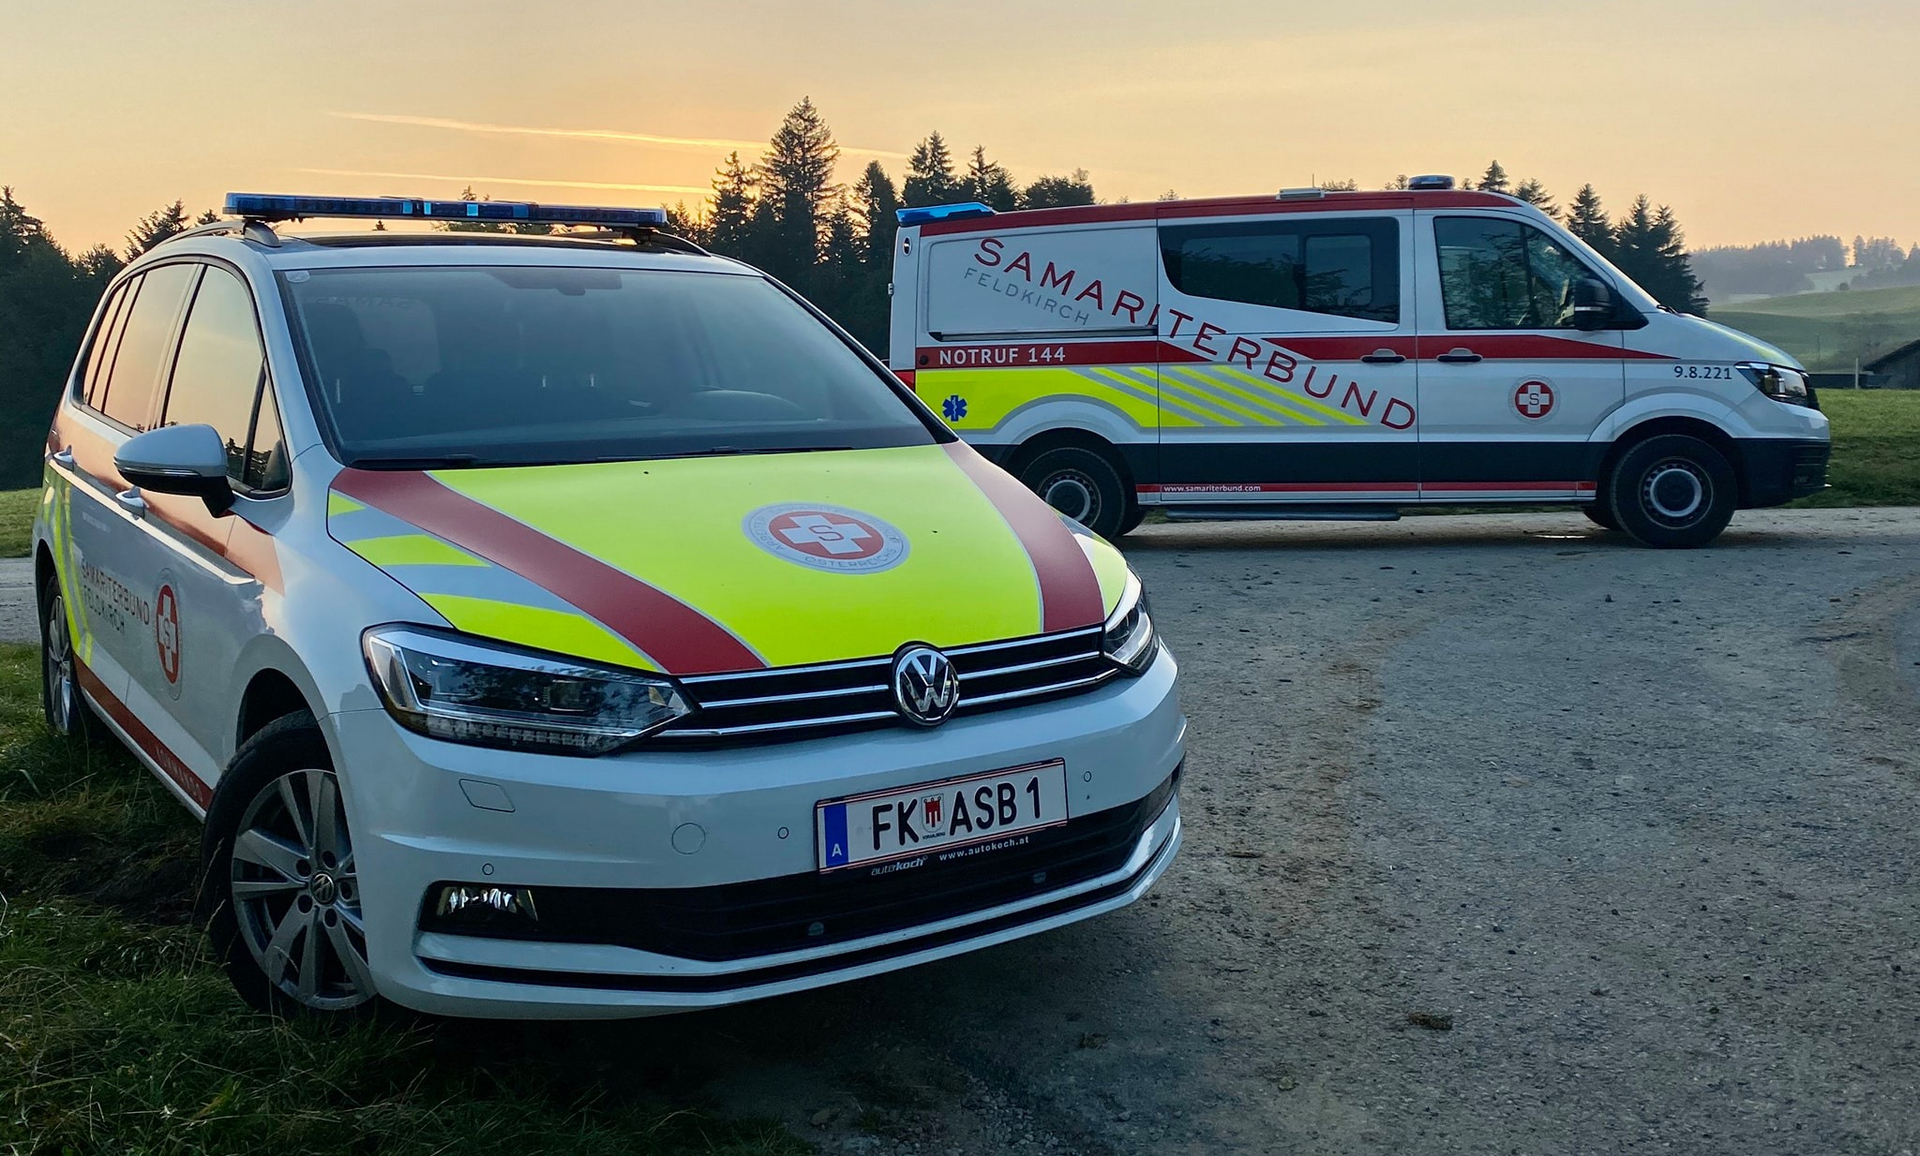 Rettungs- und Notfallwagen Samariterbund Vorarlberg